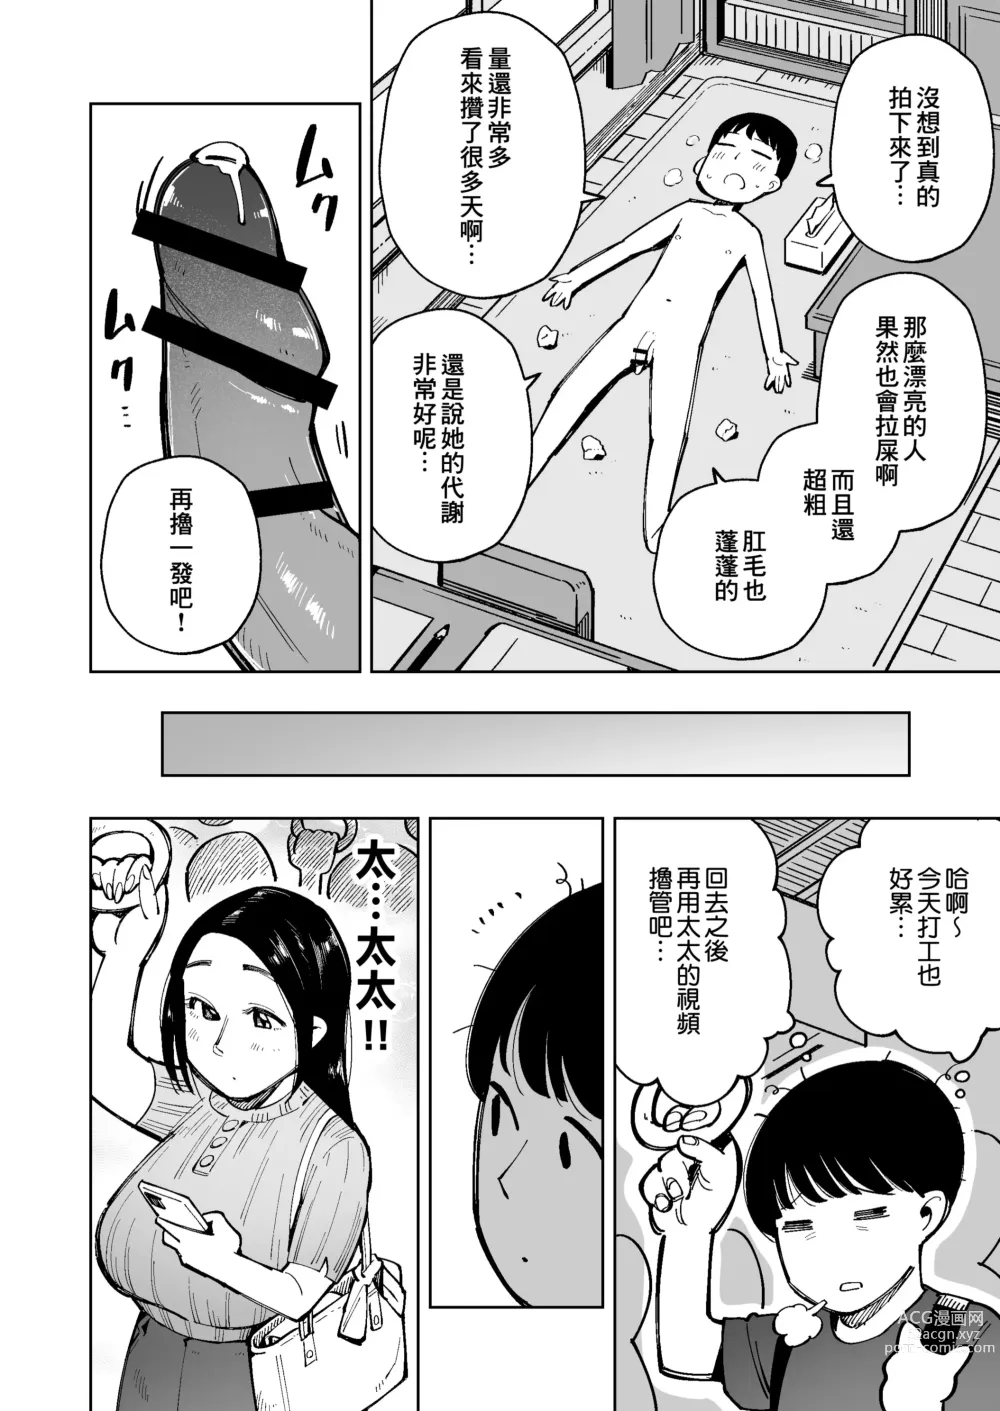 Page 7 of doujinshi 在電車上對大屁股太太進行癡漢行為時弄到大便失禁了所以就這麼操下去了。